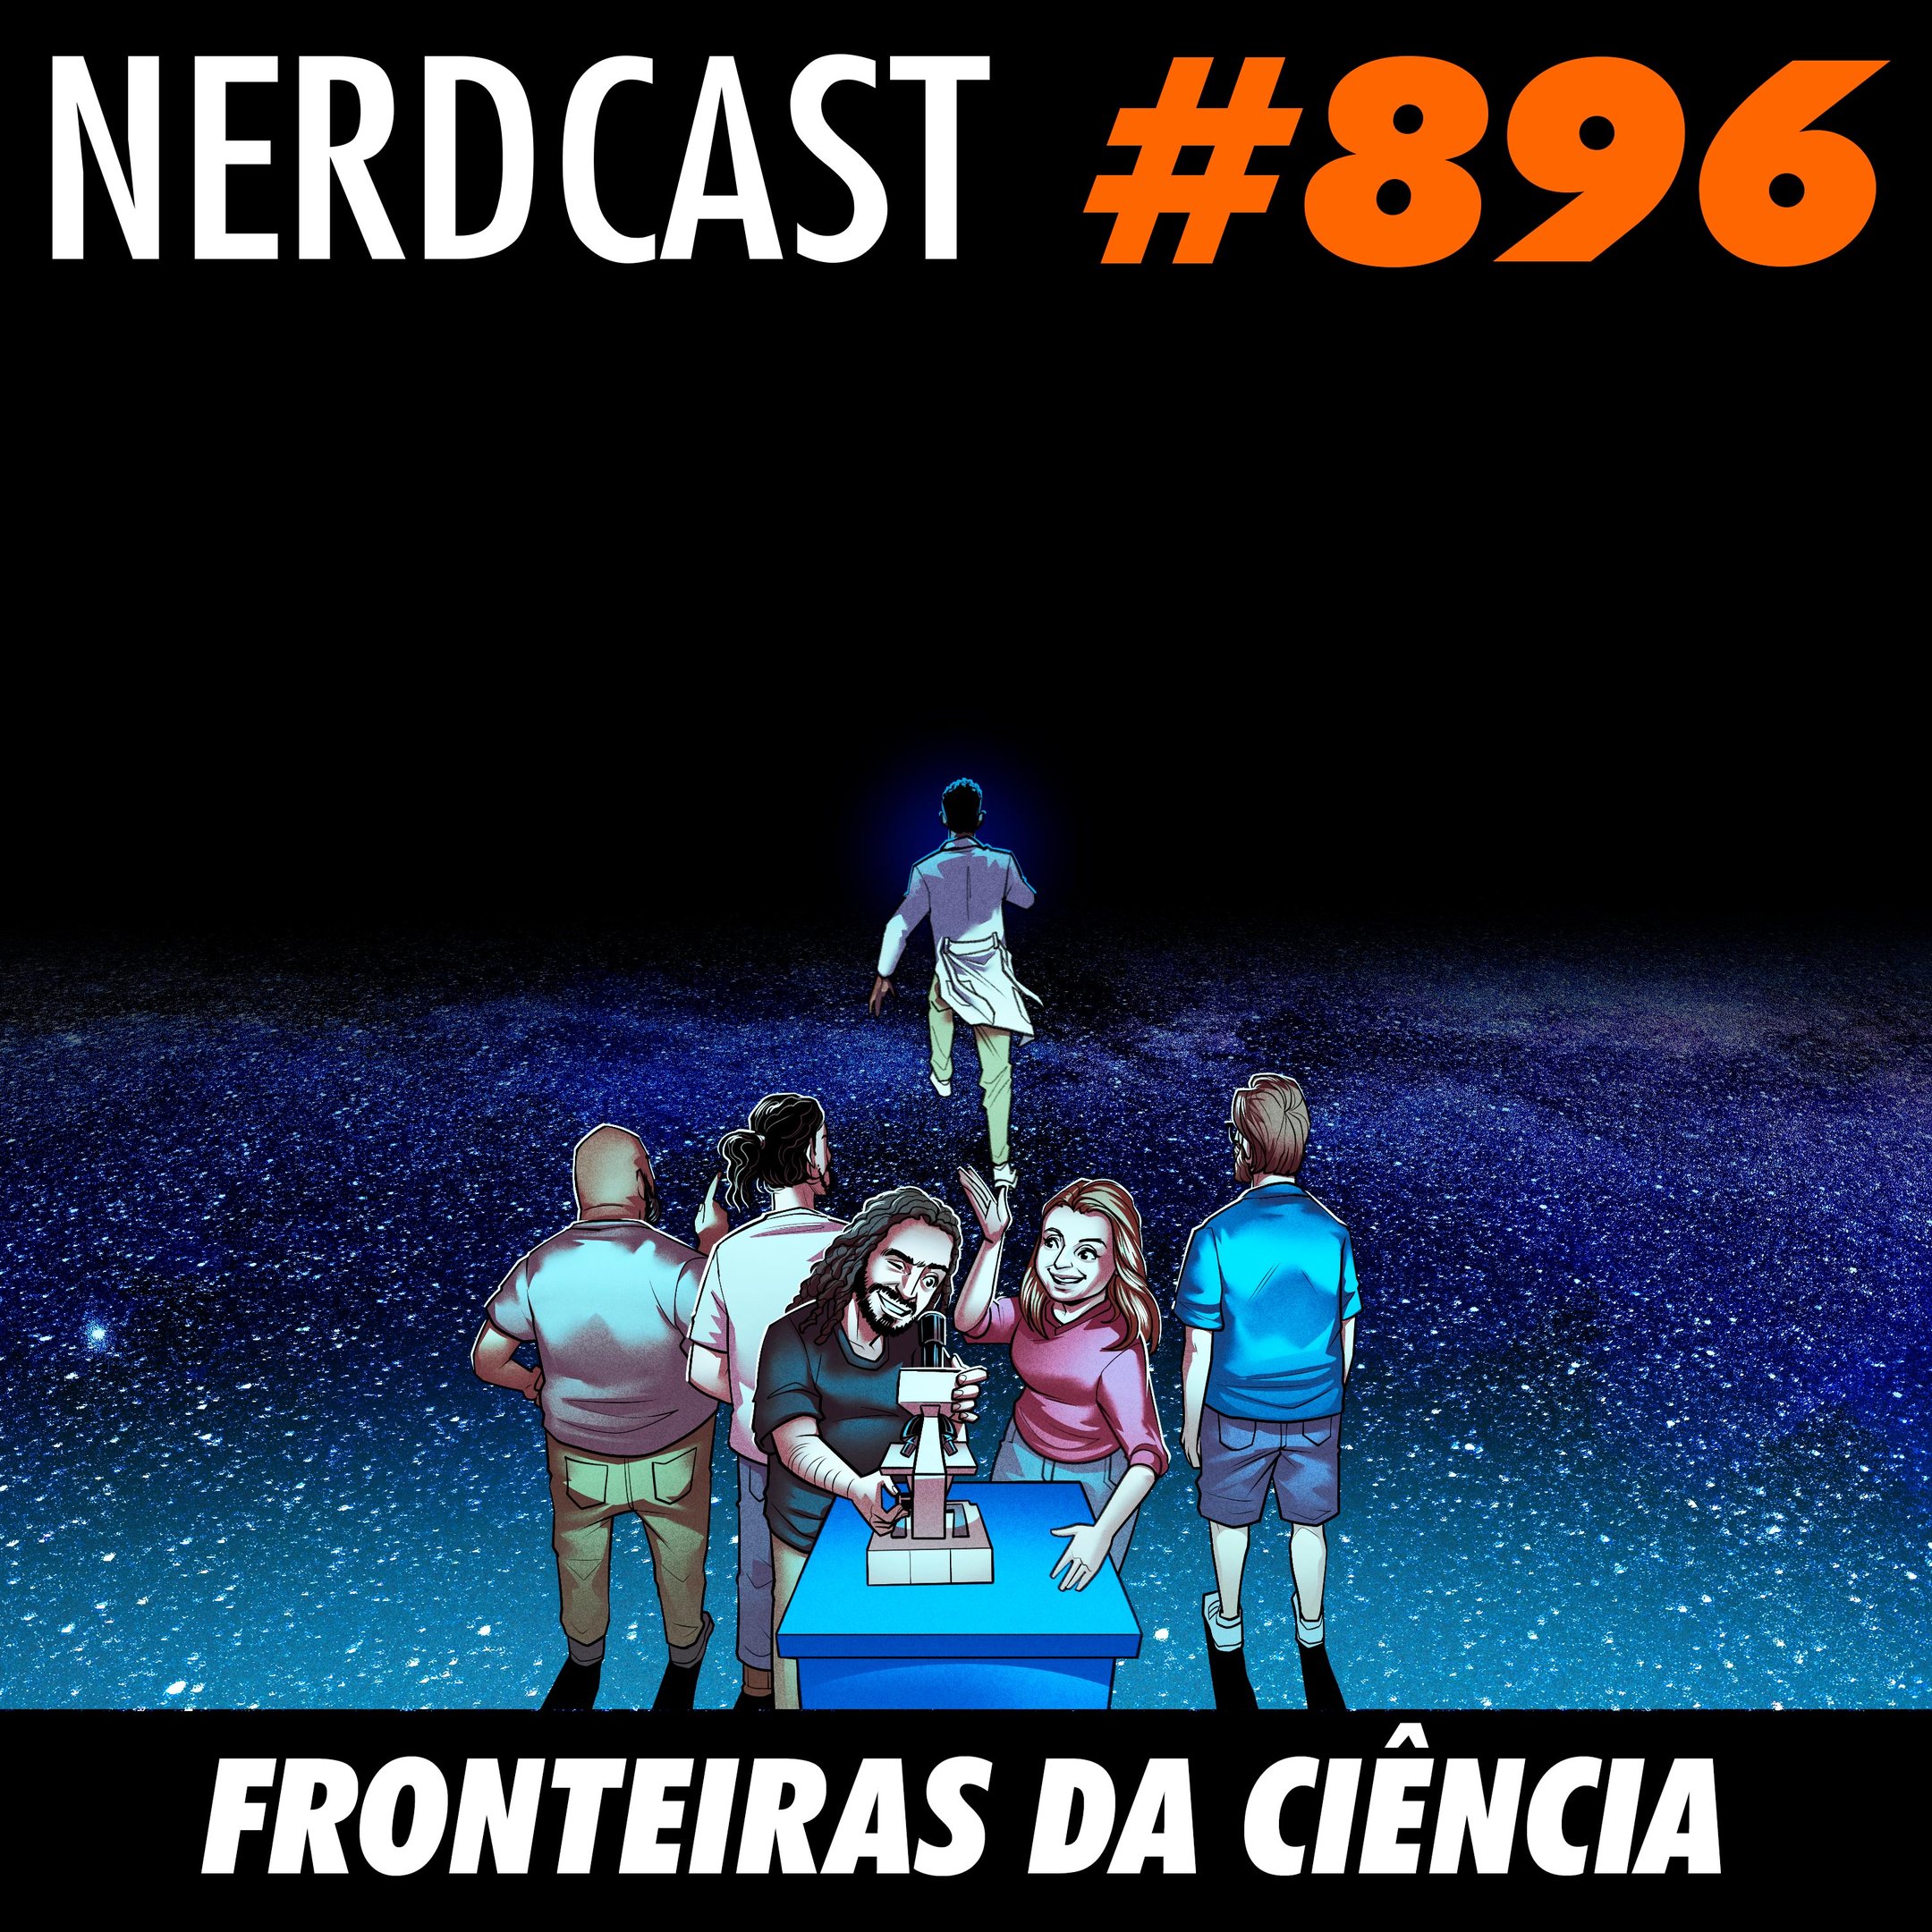 Lá do Bunker 101 - Micareta Gamer – NerdCast – Podcast – Podtail